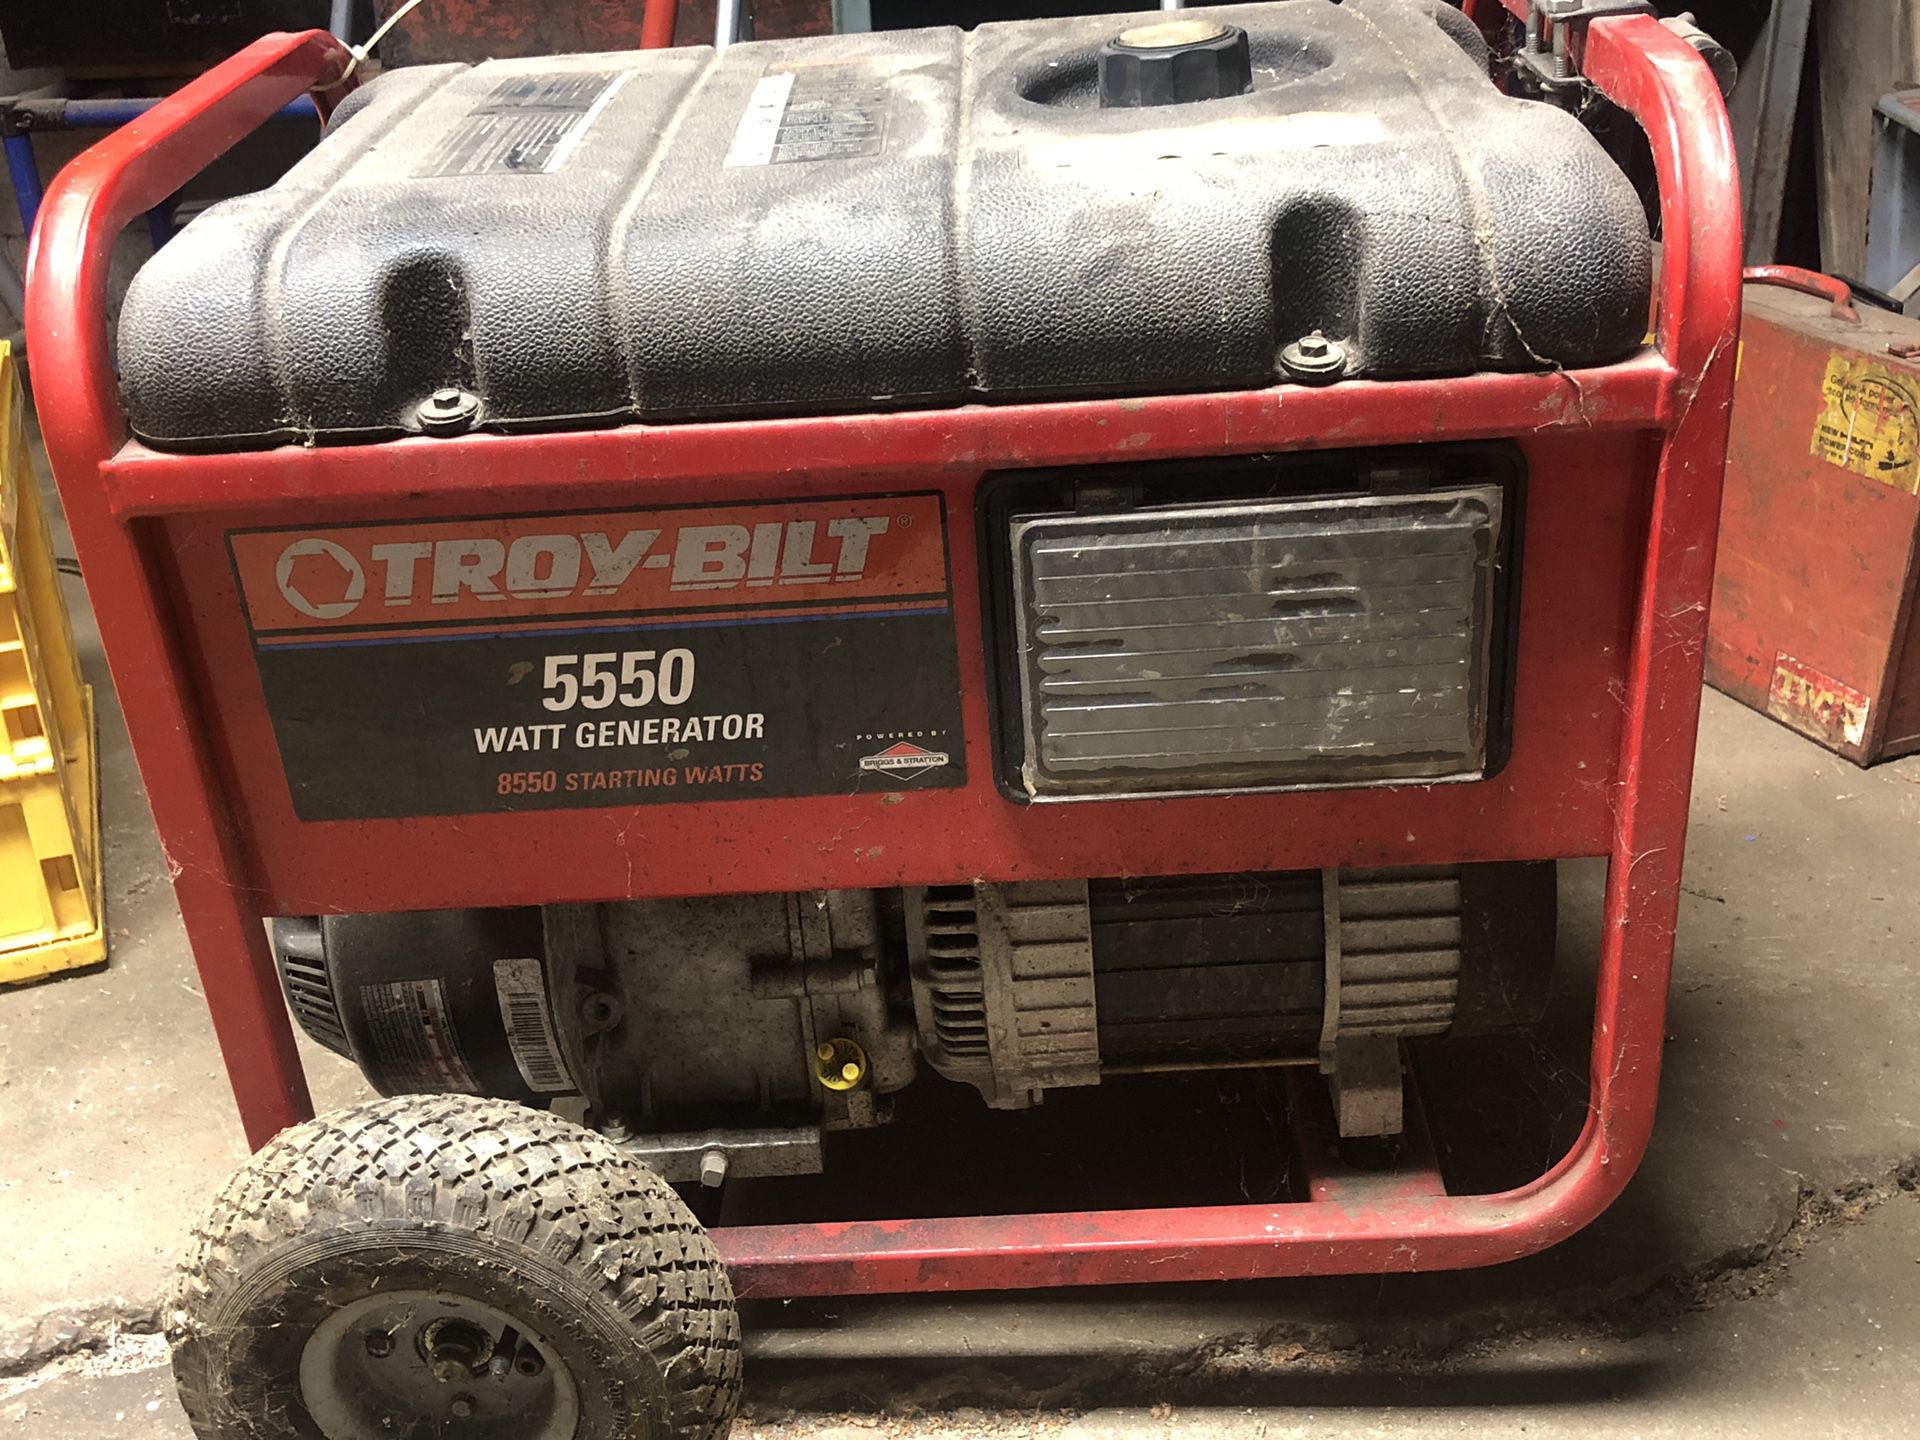 5550 watt generator